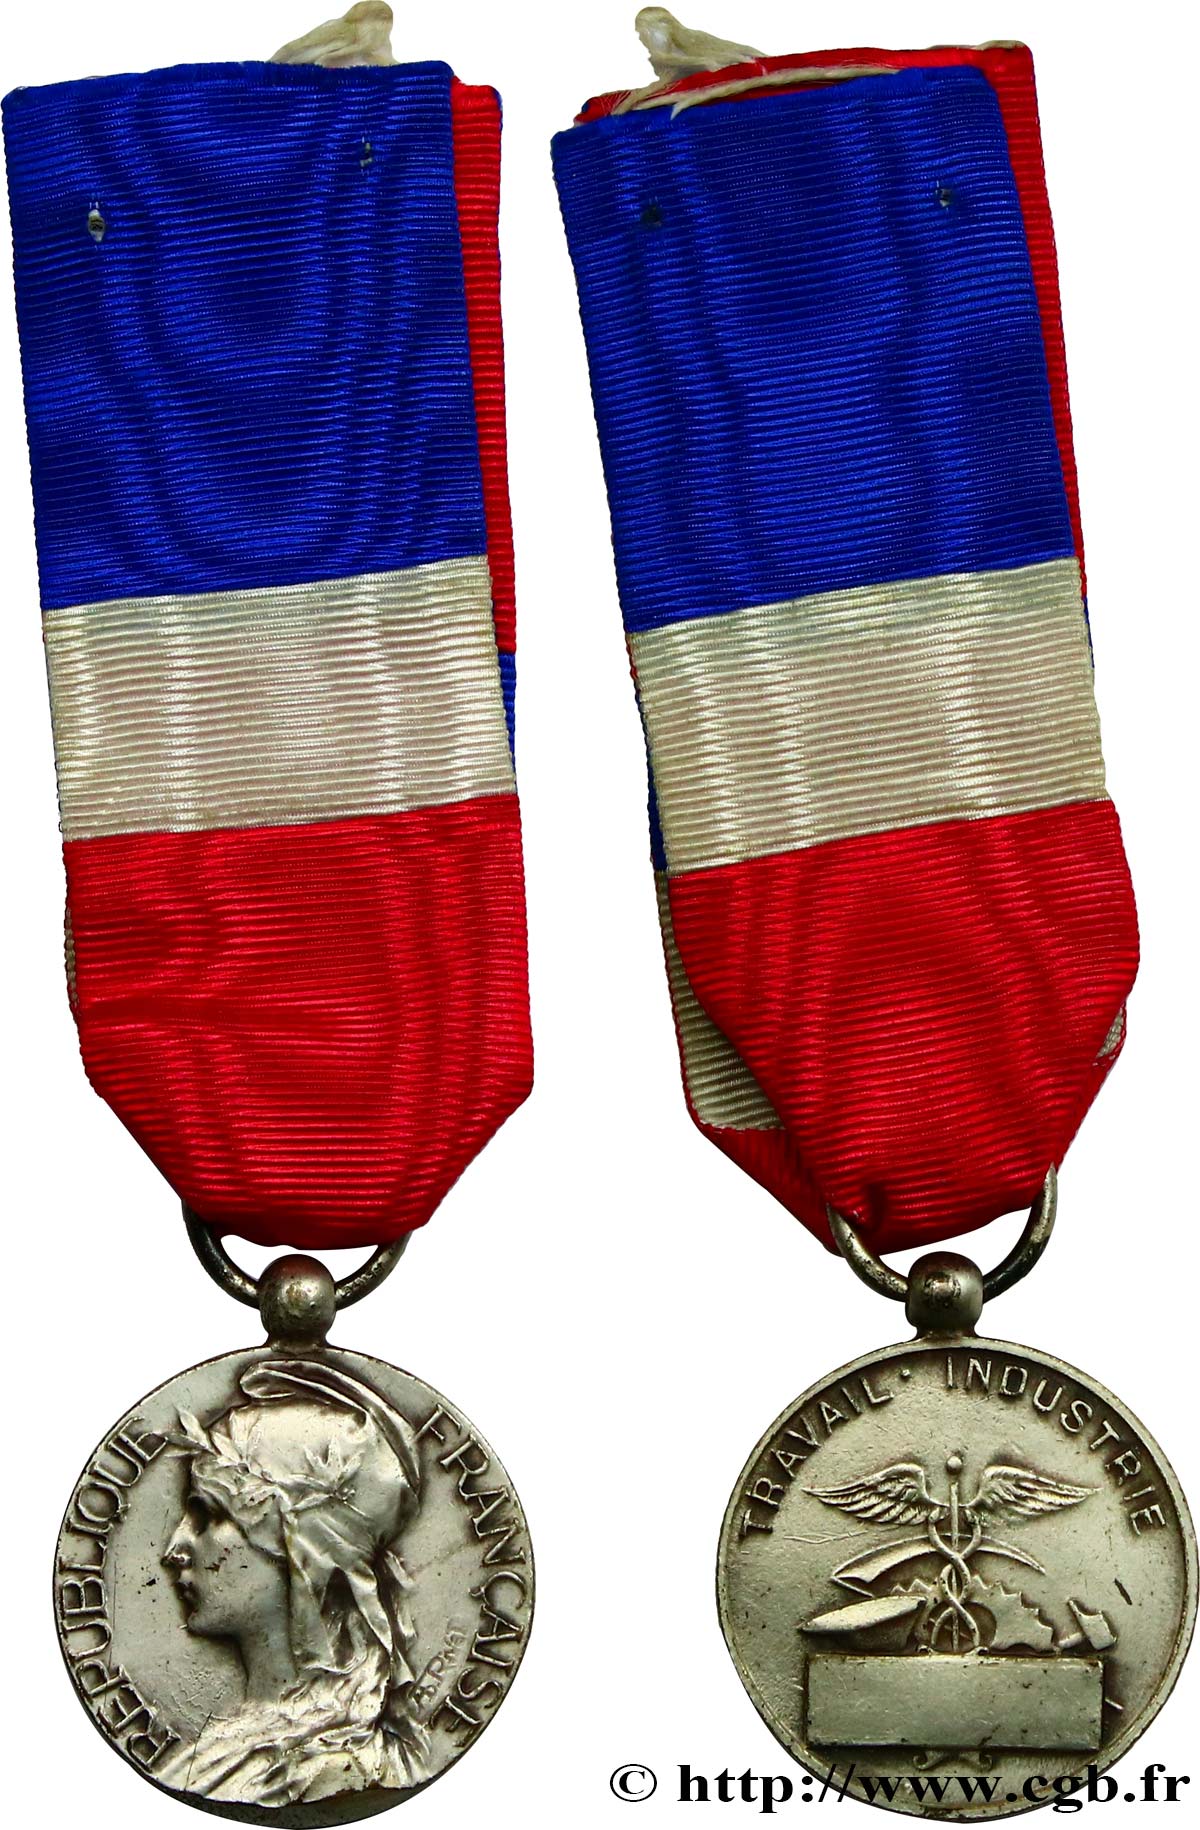 TROISIÈME RÉPUBLIQUE Médaille, Cours d'adultes fme_834961 Médailles